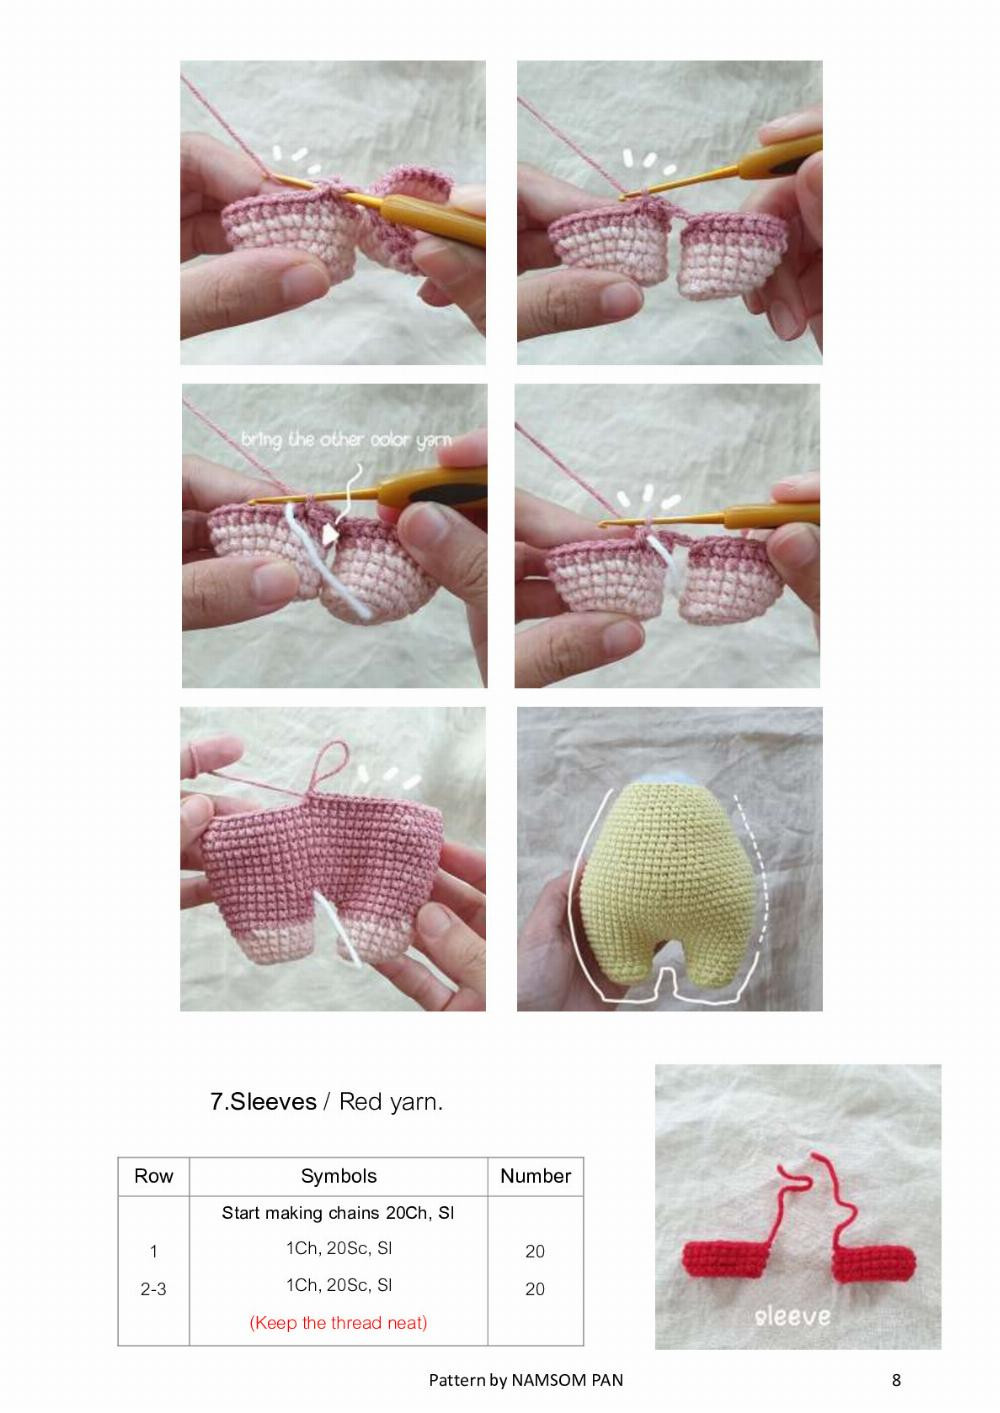 pooh crochet pattern